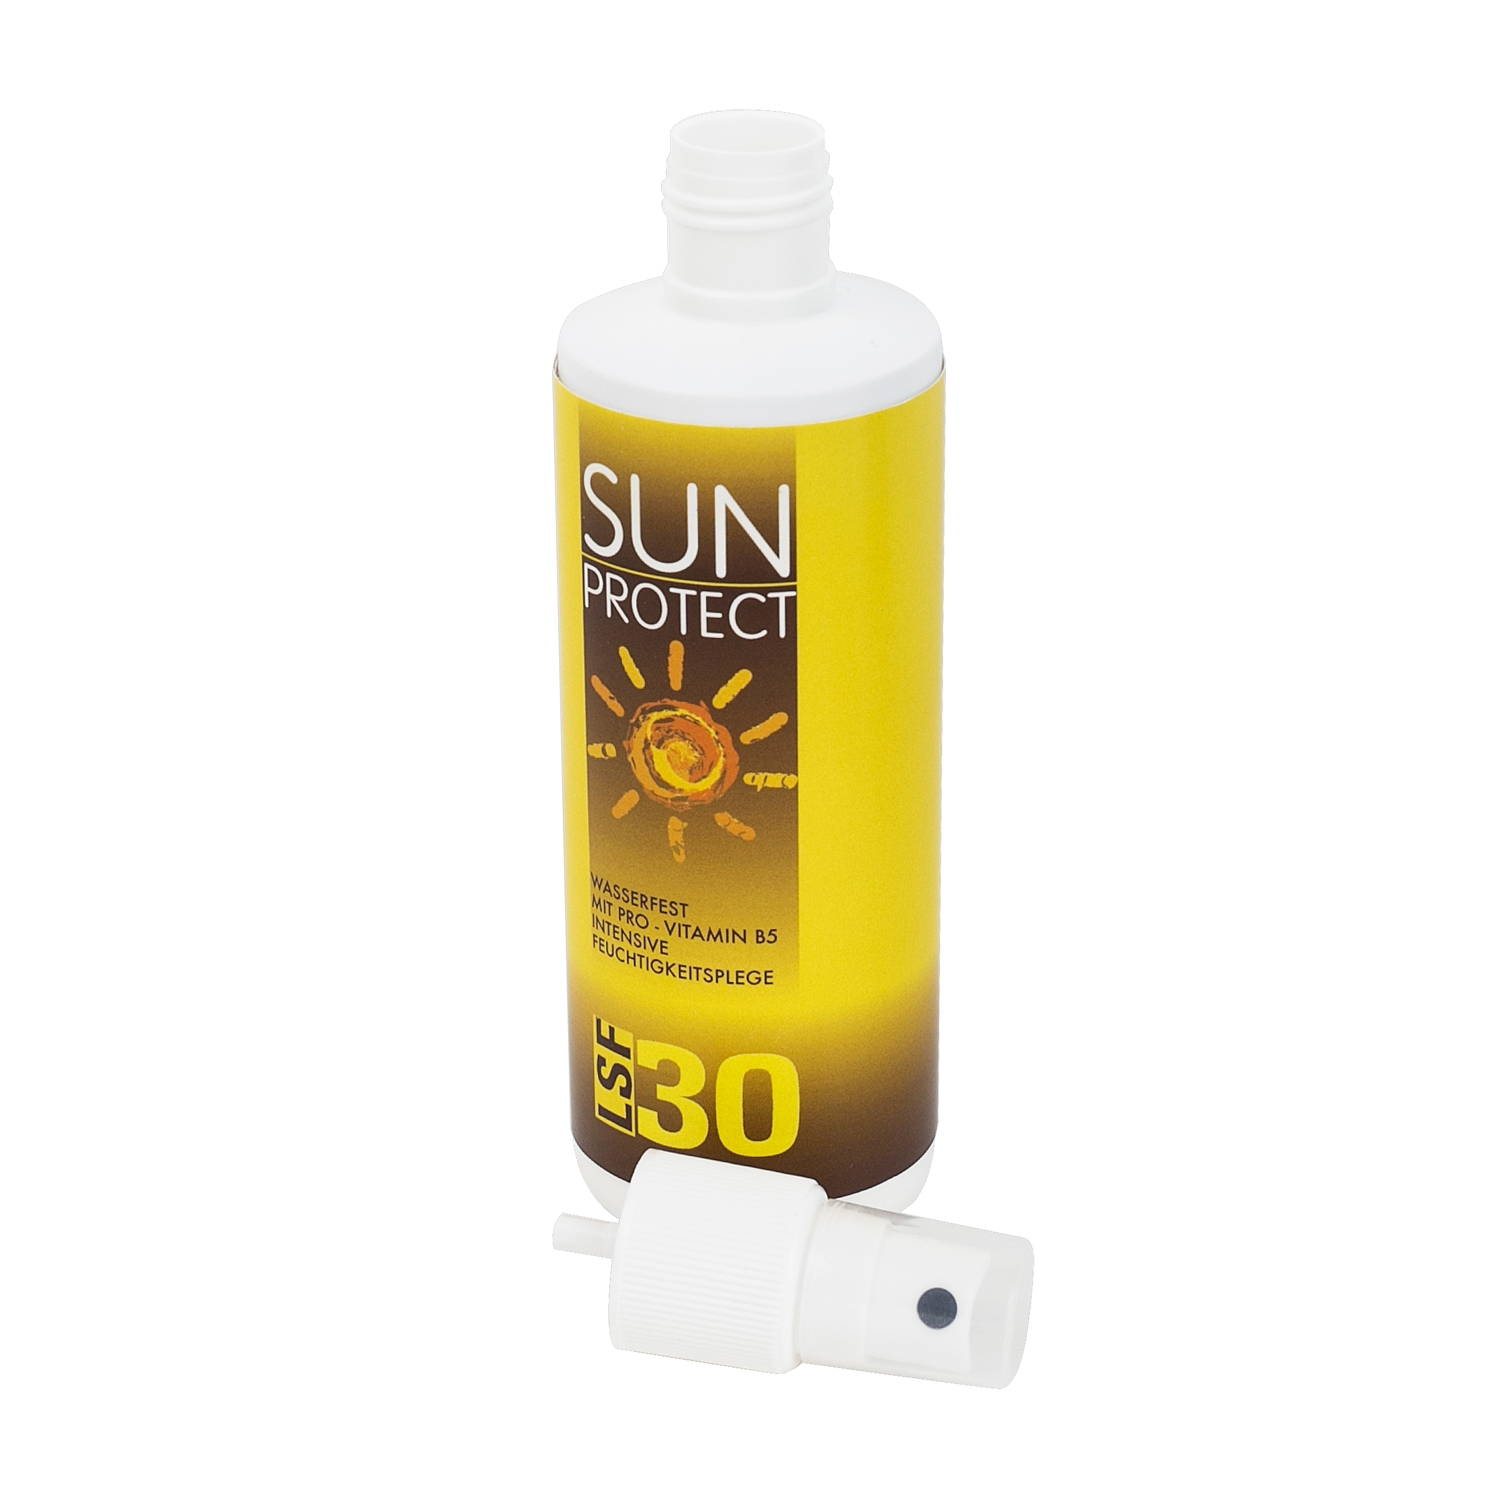 Dosensafe Sonnencreme Sun Protect